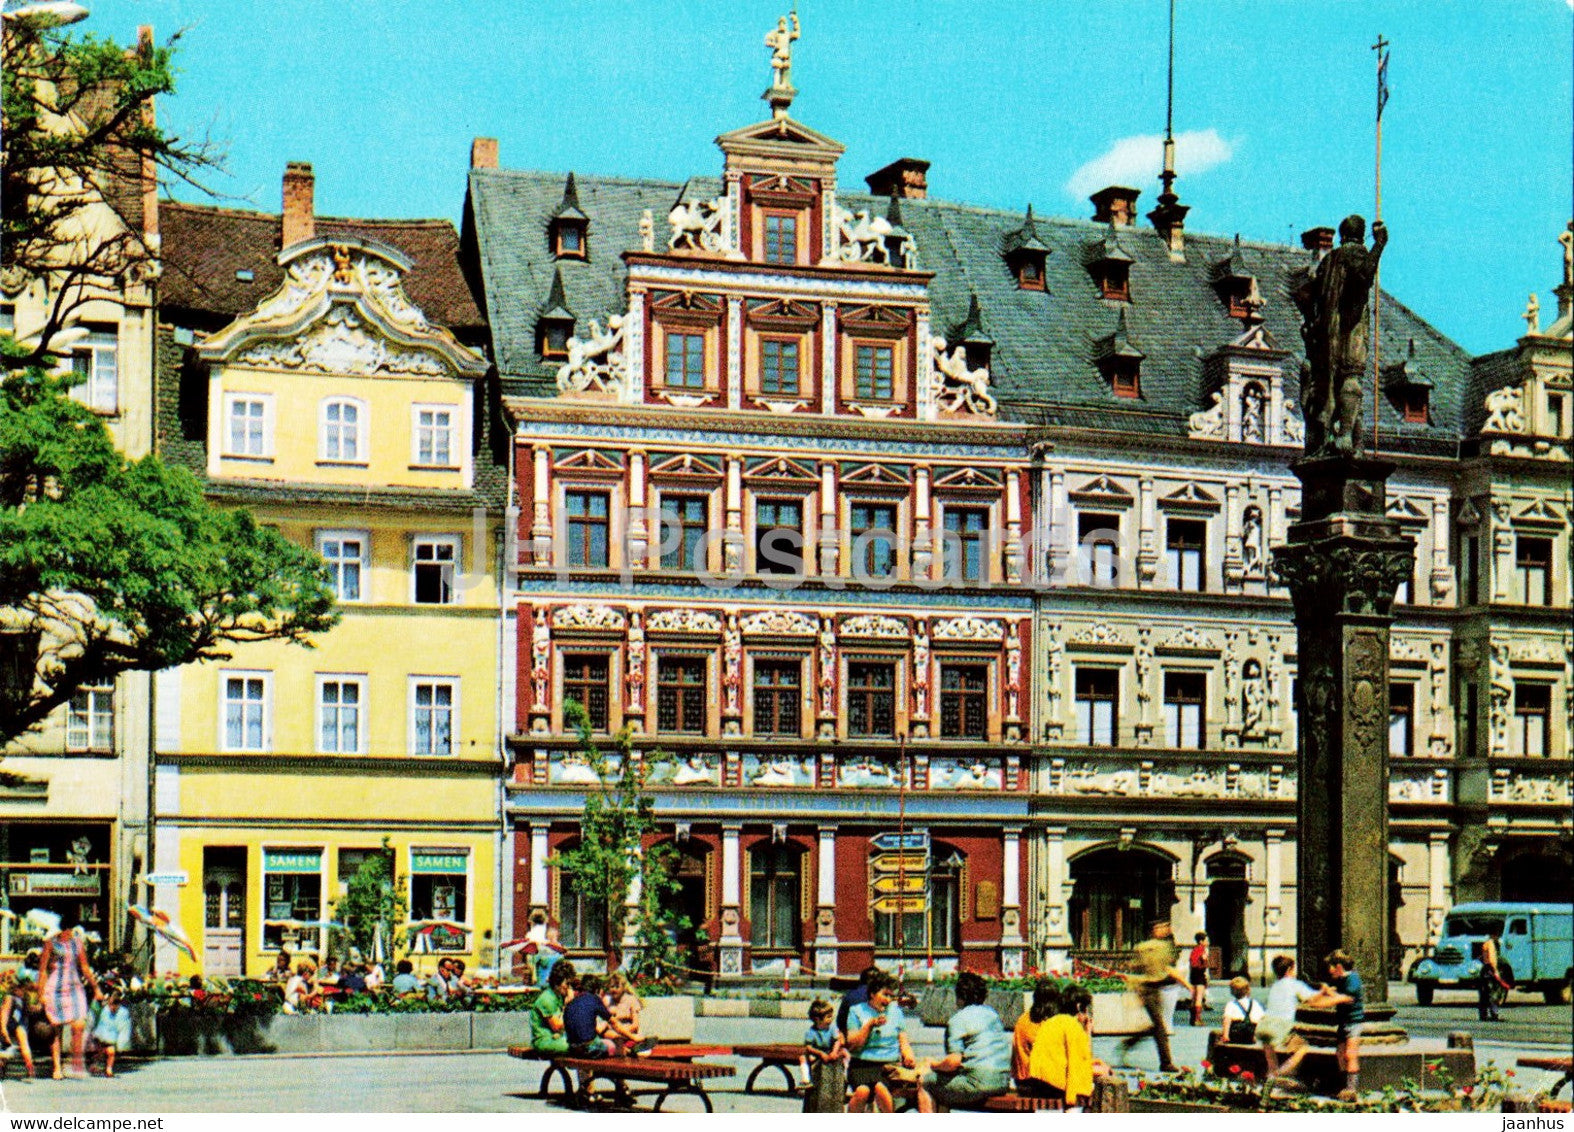 Erfurt - Fischmarkt mit Roland - Haus zum Breiten Herd und Gildehaus - Germany DDR - unused - JH Postcards